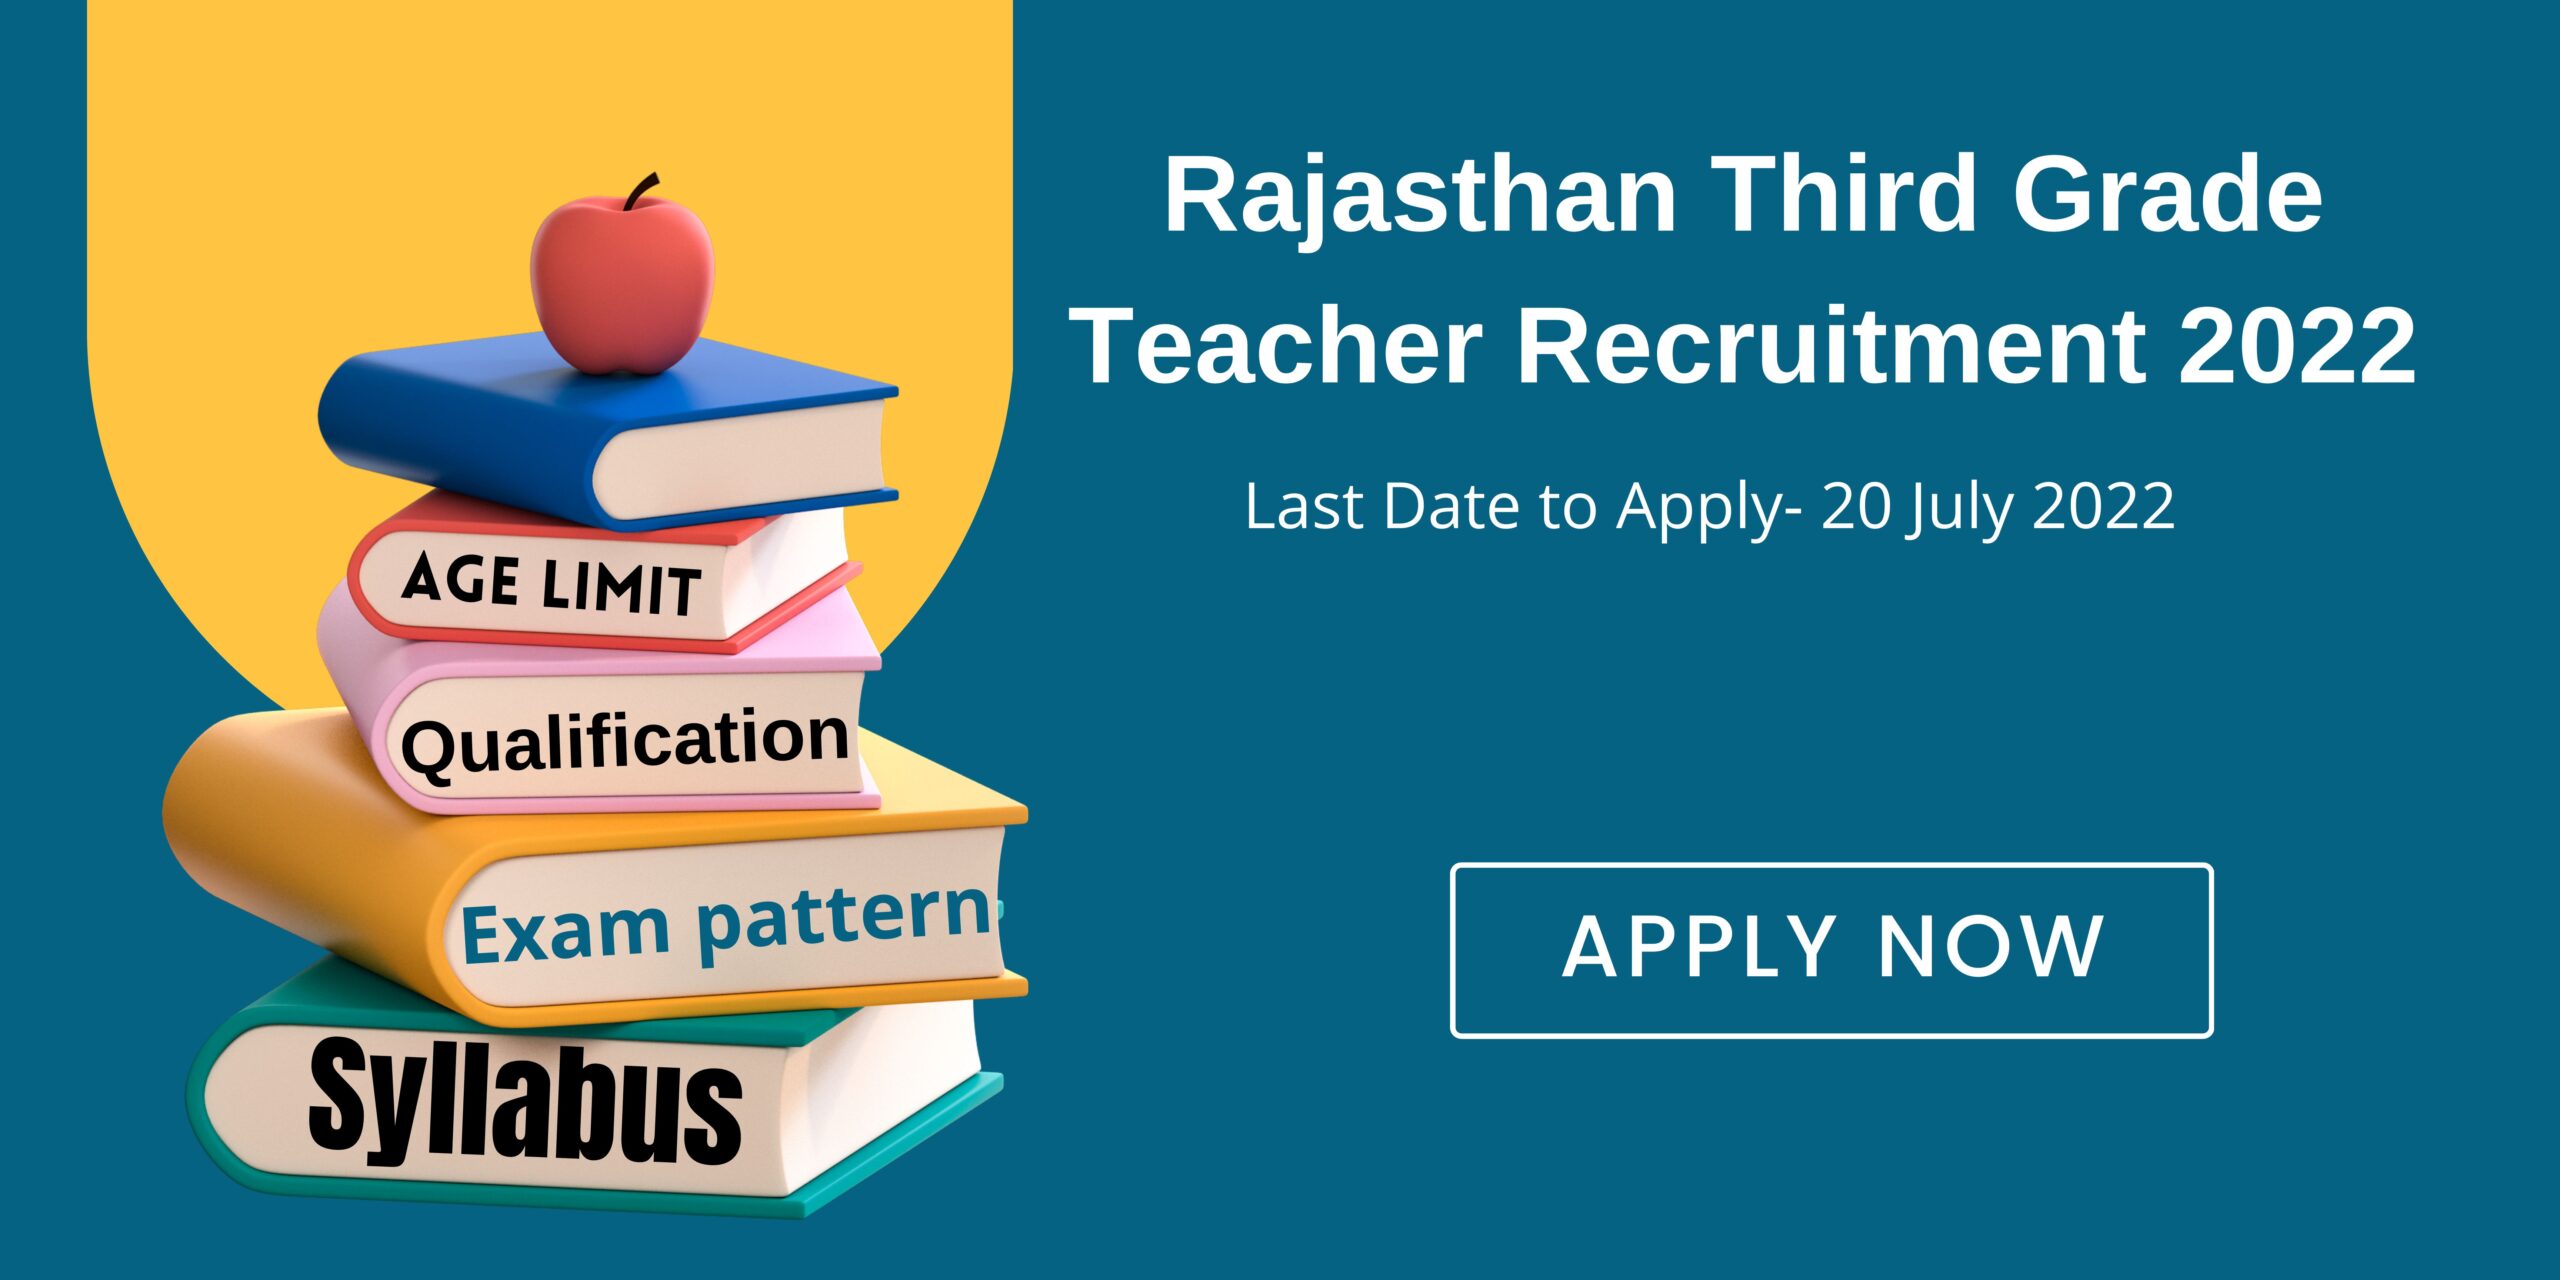 Rajasthan Third Grade Teacher Recruitment 2022